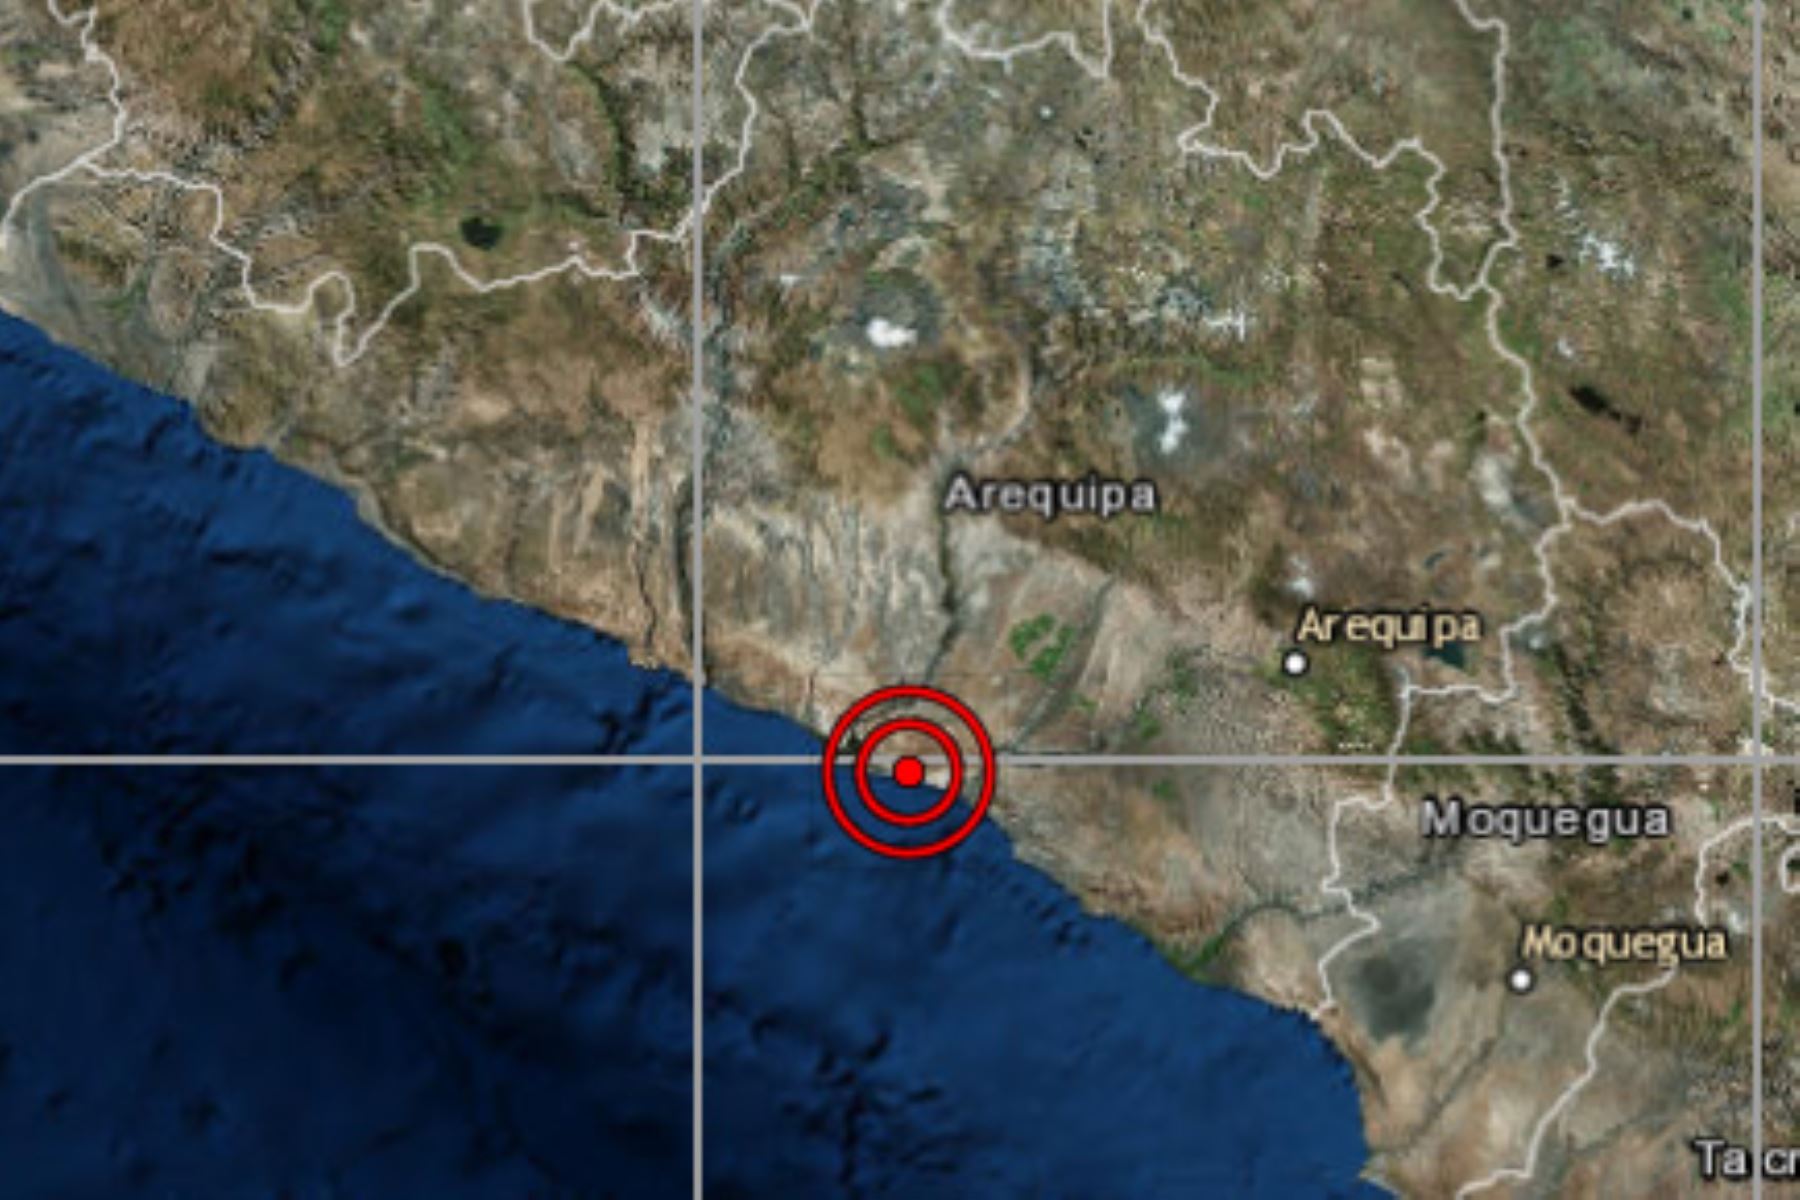 IGP reportó esta noche un sismo de magnitud 3.8 en la localidad de Quilca, en la provincia arequipeña de Camaná.